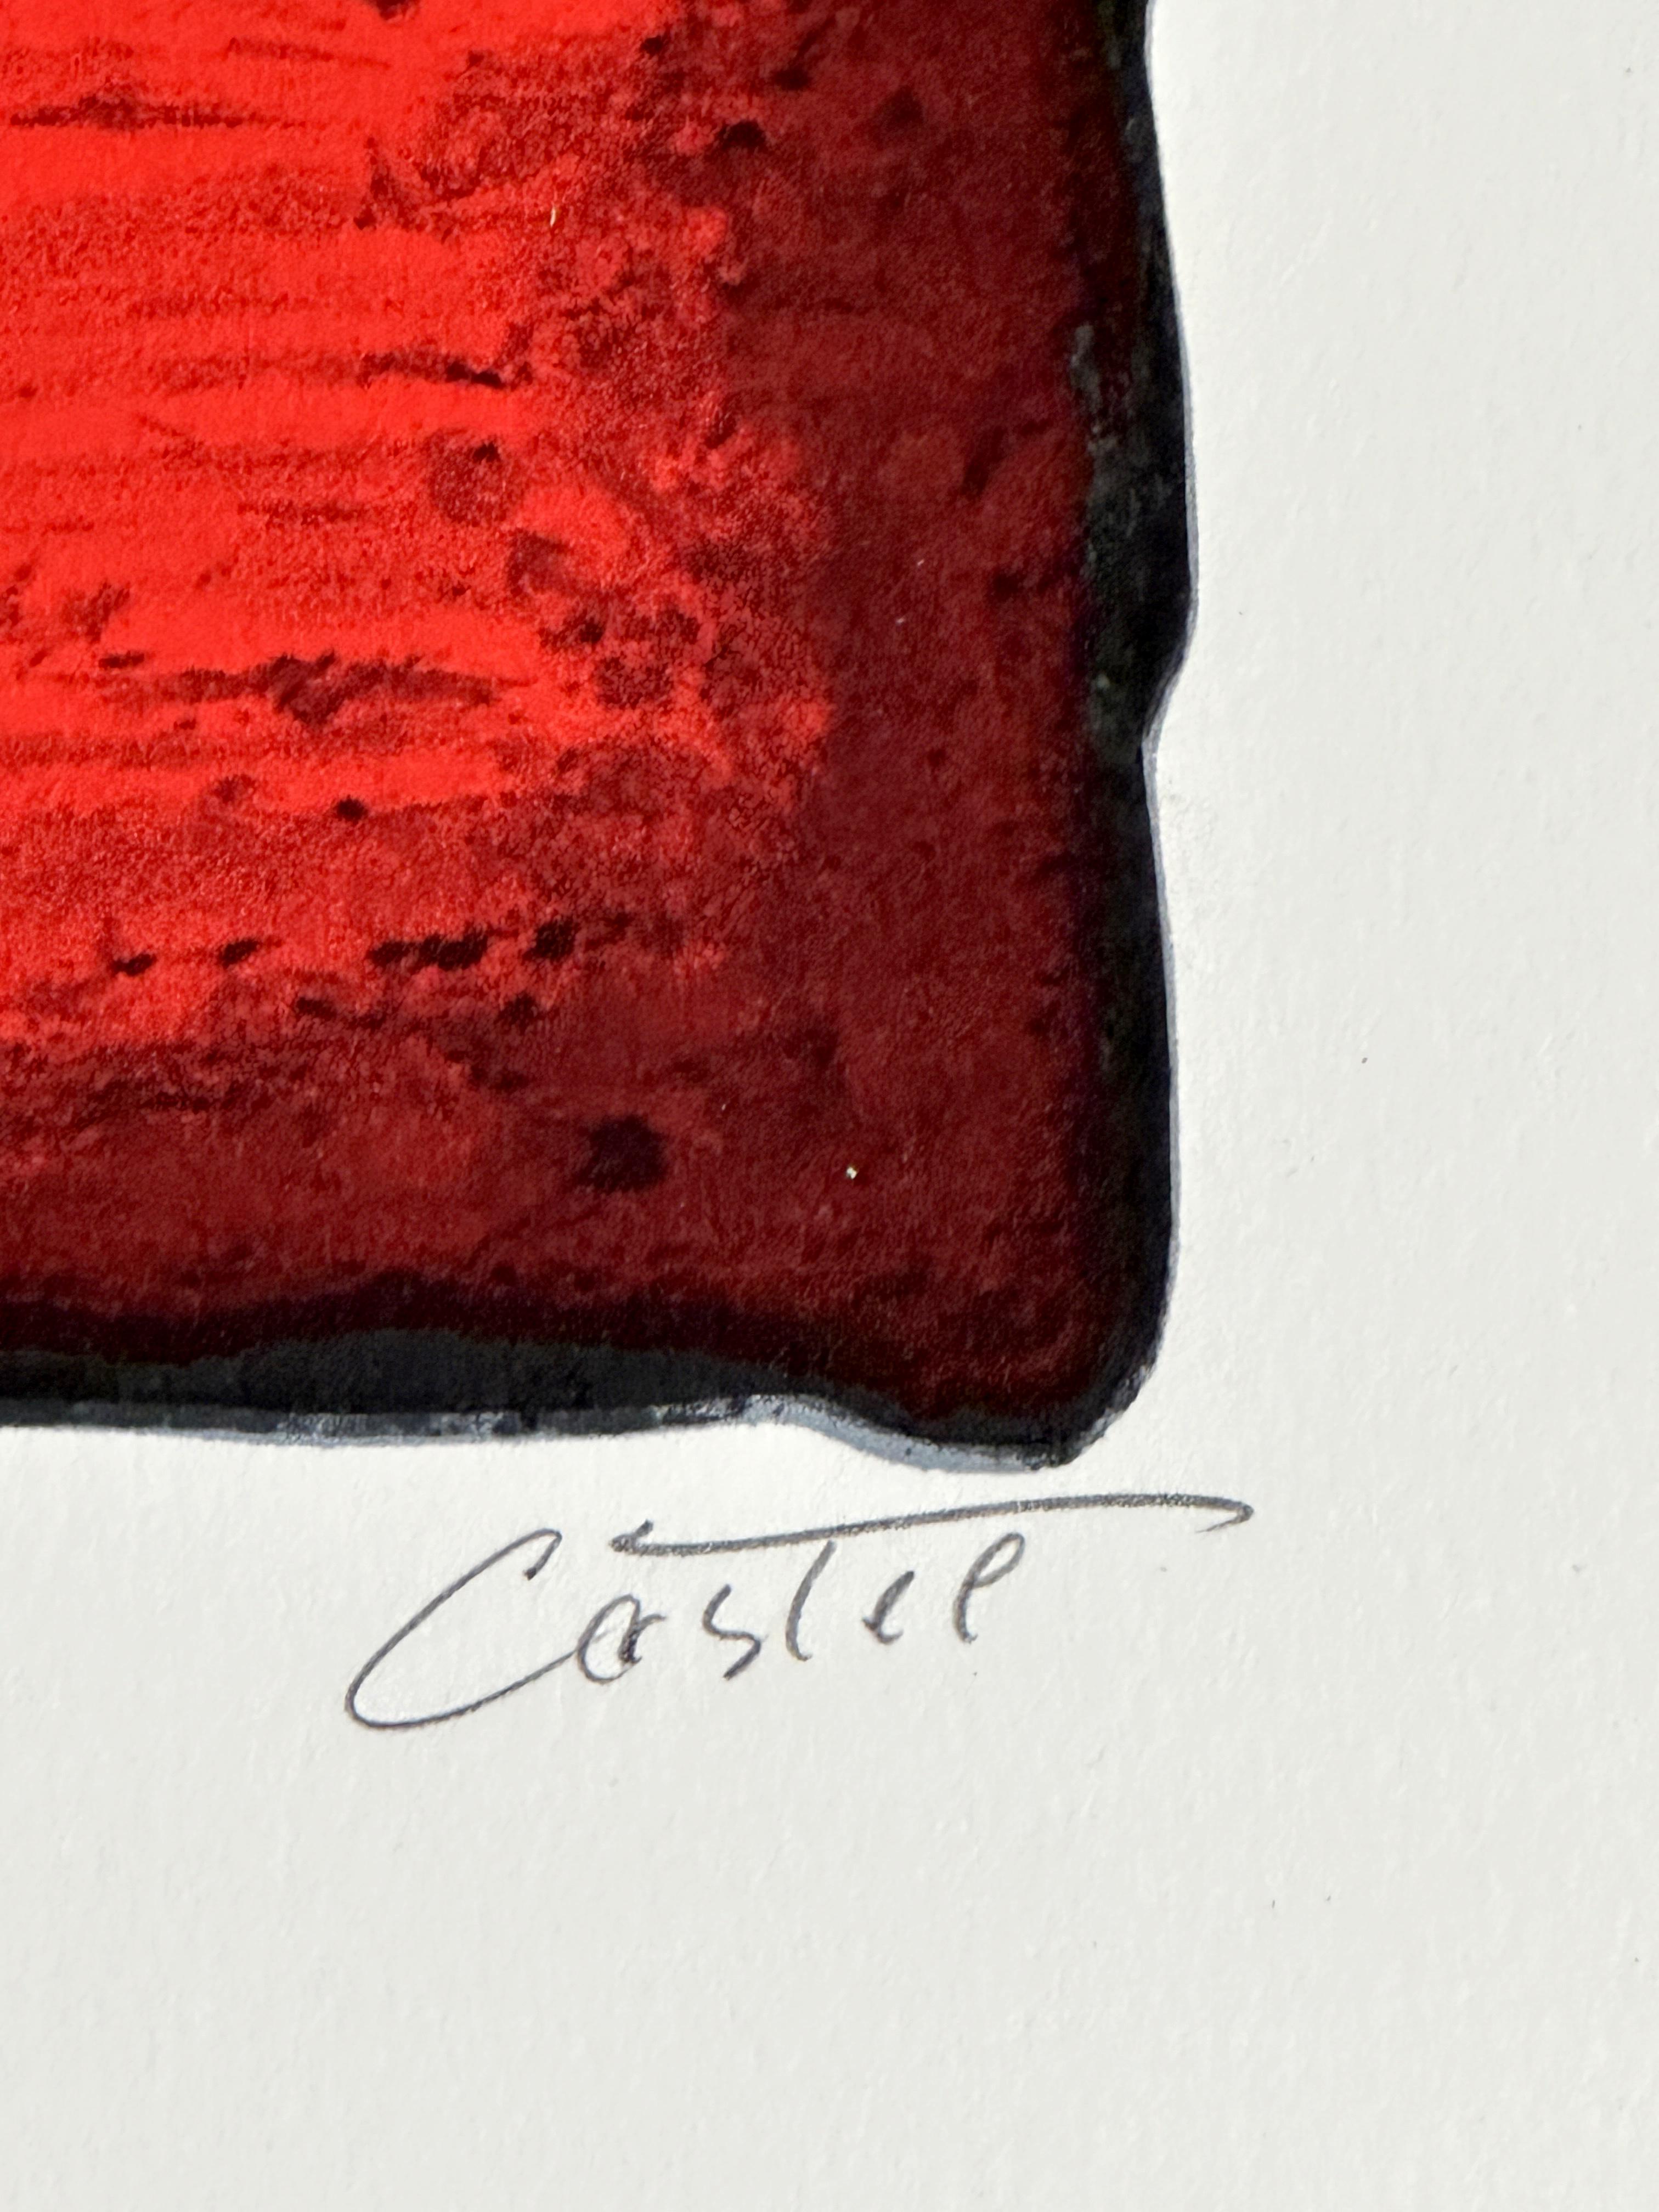 Moshe Castel
Prophétie - 1980
Estampe - Lithographie sur papier Somerset 29.75'' x 21.5''
Edition : Signé au crayon et marqué 95/150

 
Moshe Castel (1909-1992) a souvent utilisé le symbolisme judaïque dans ses œuvres d'art. Il est devenu célèbre